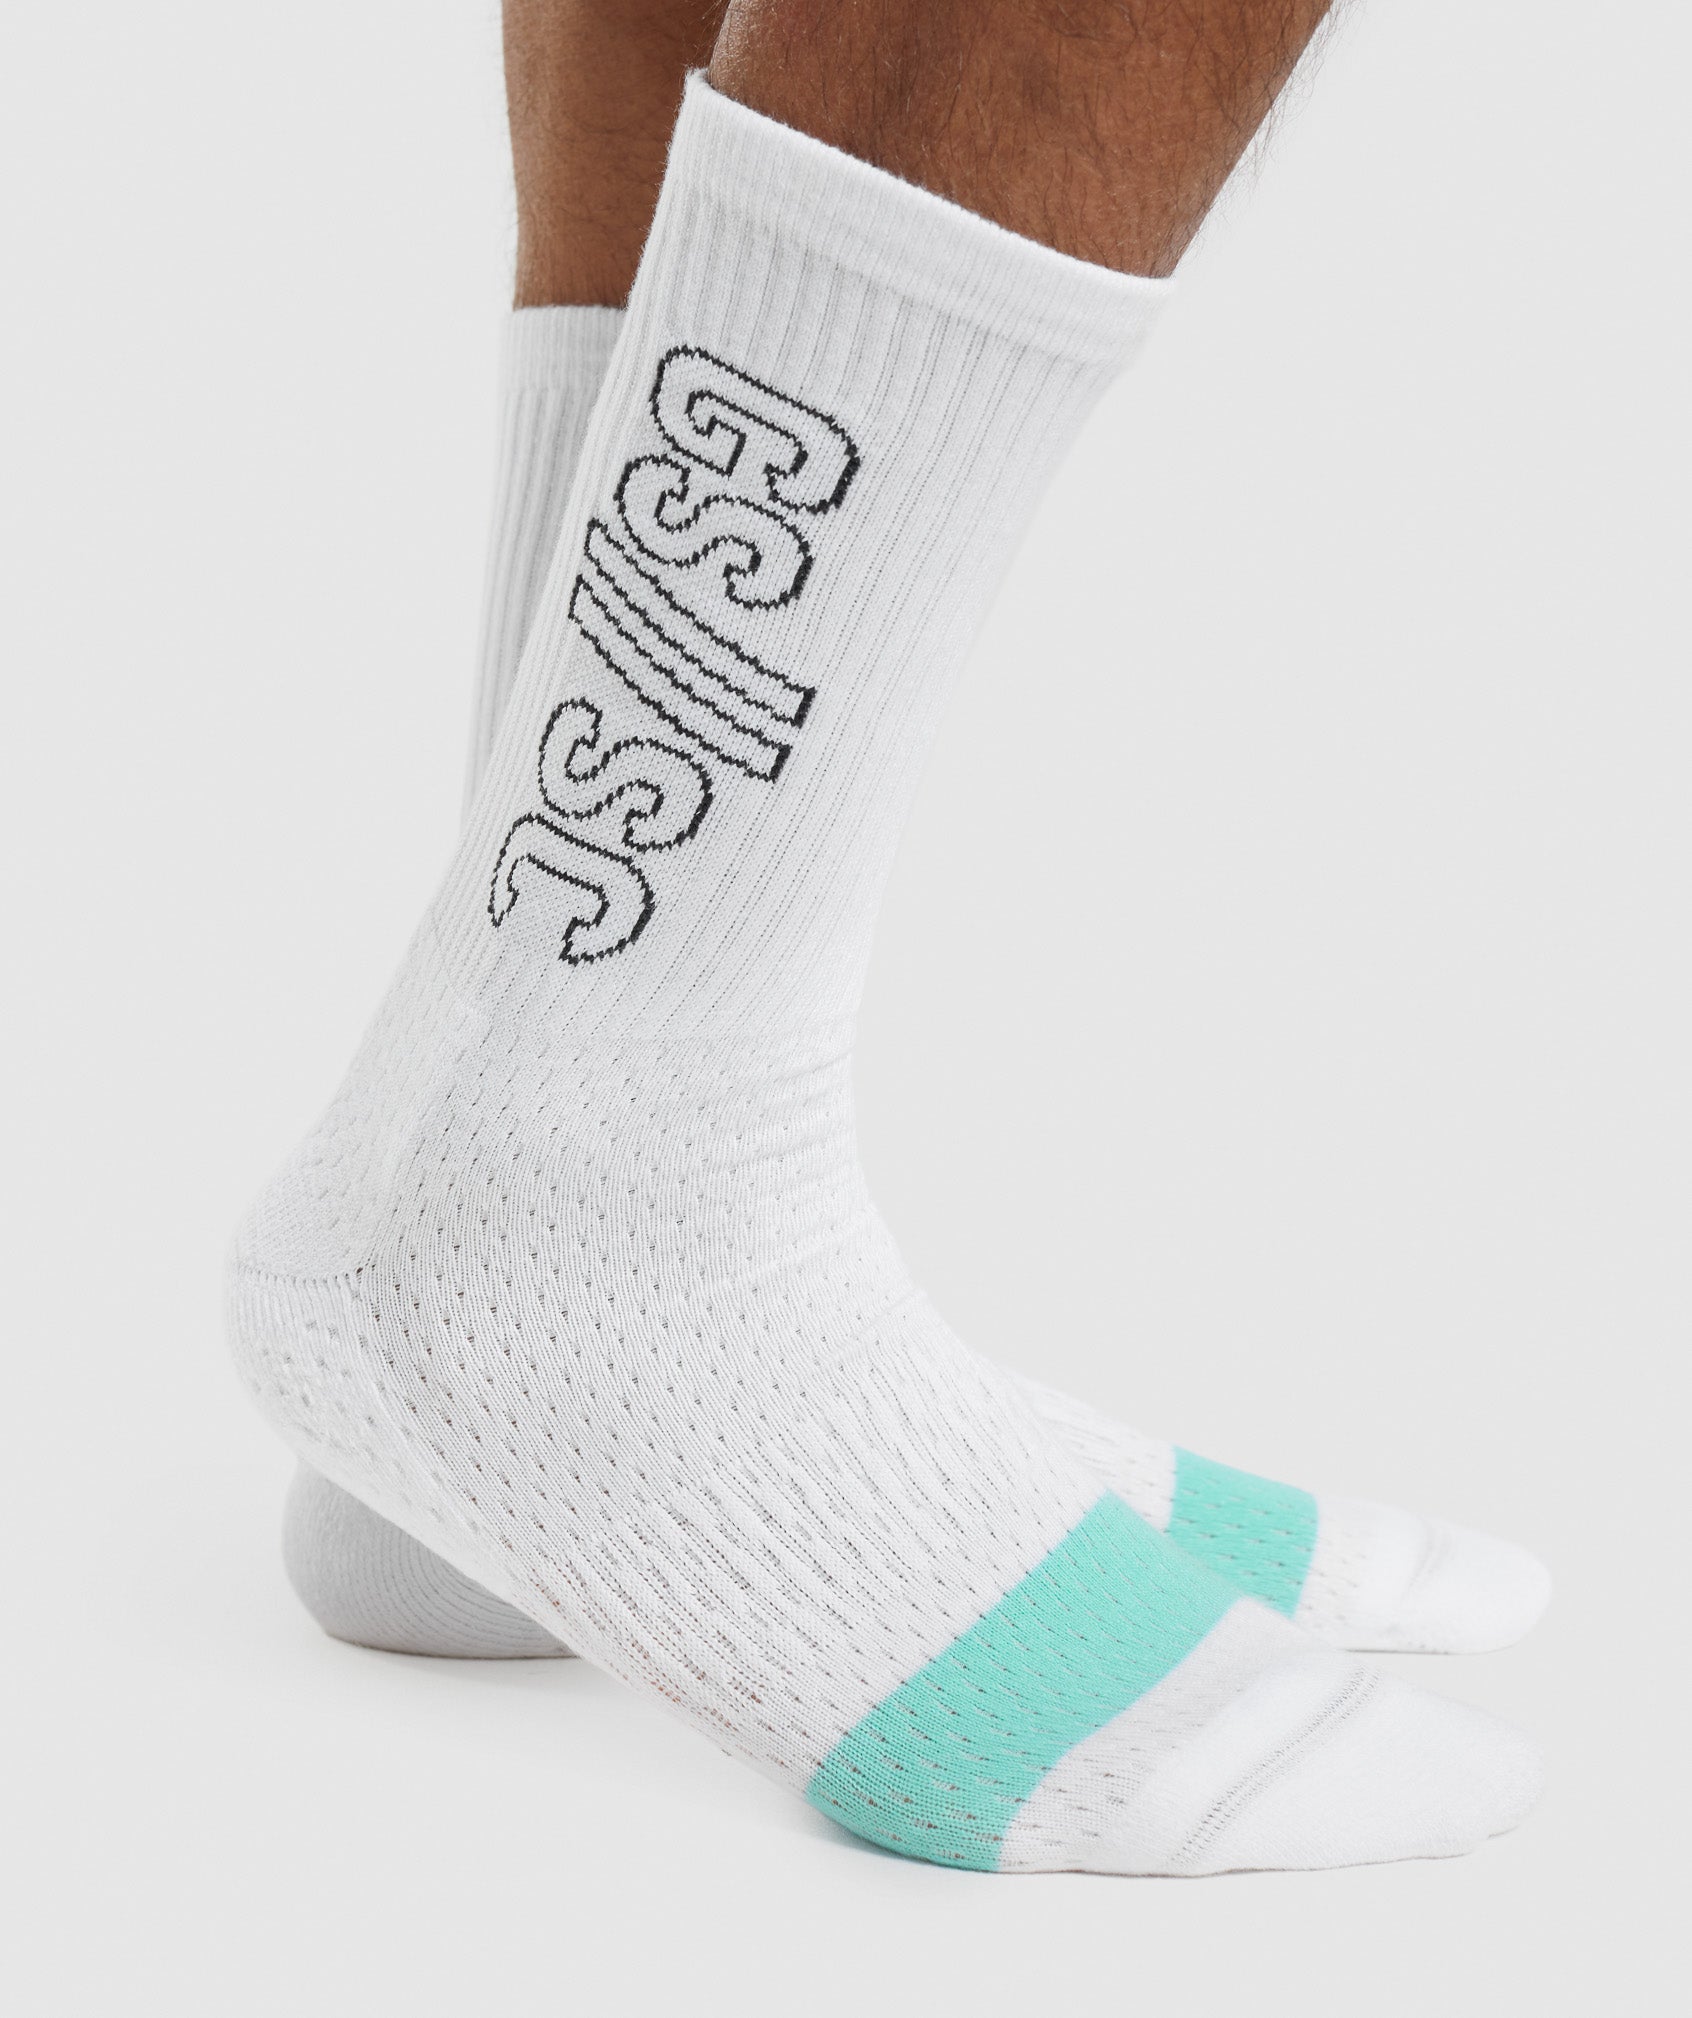 Gymshark//Steve Cook Crew Socks in White